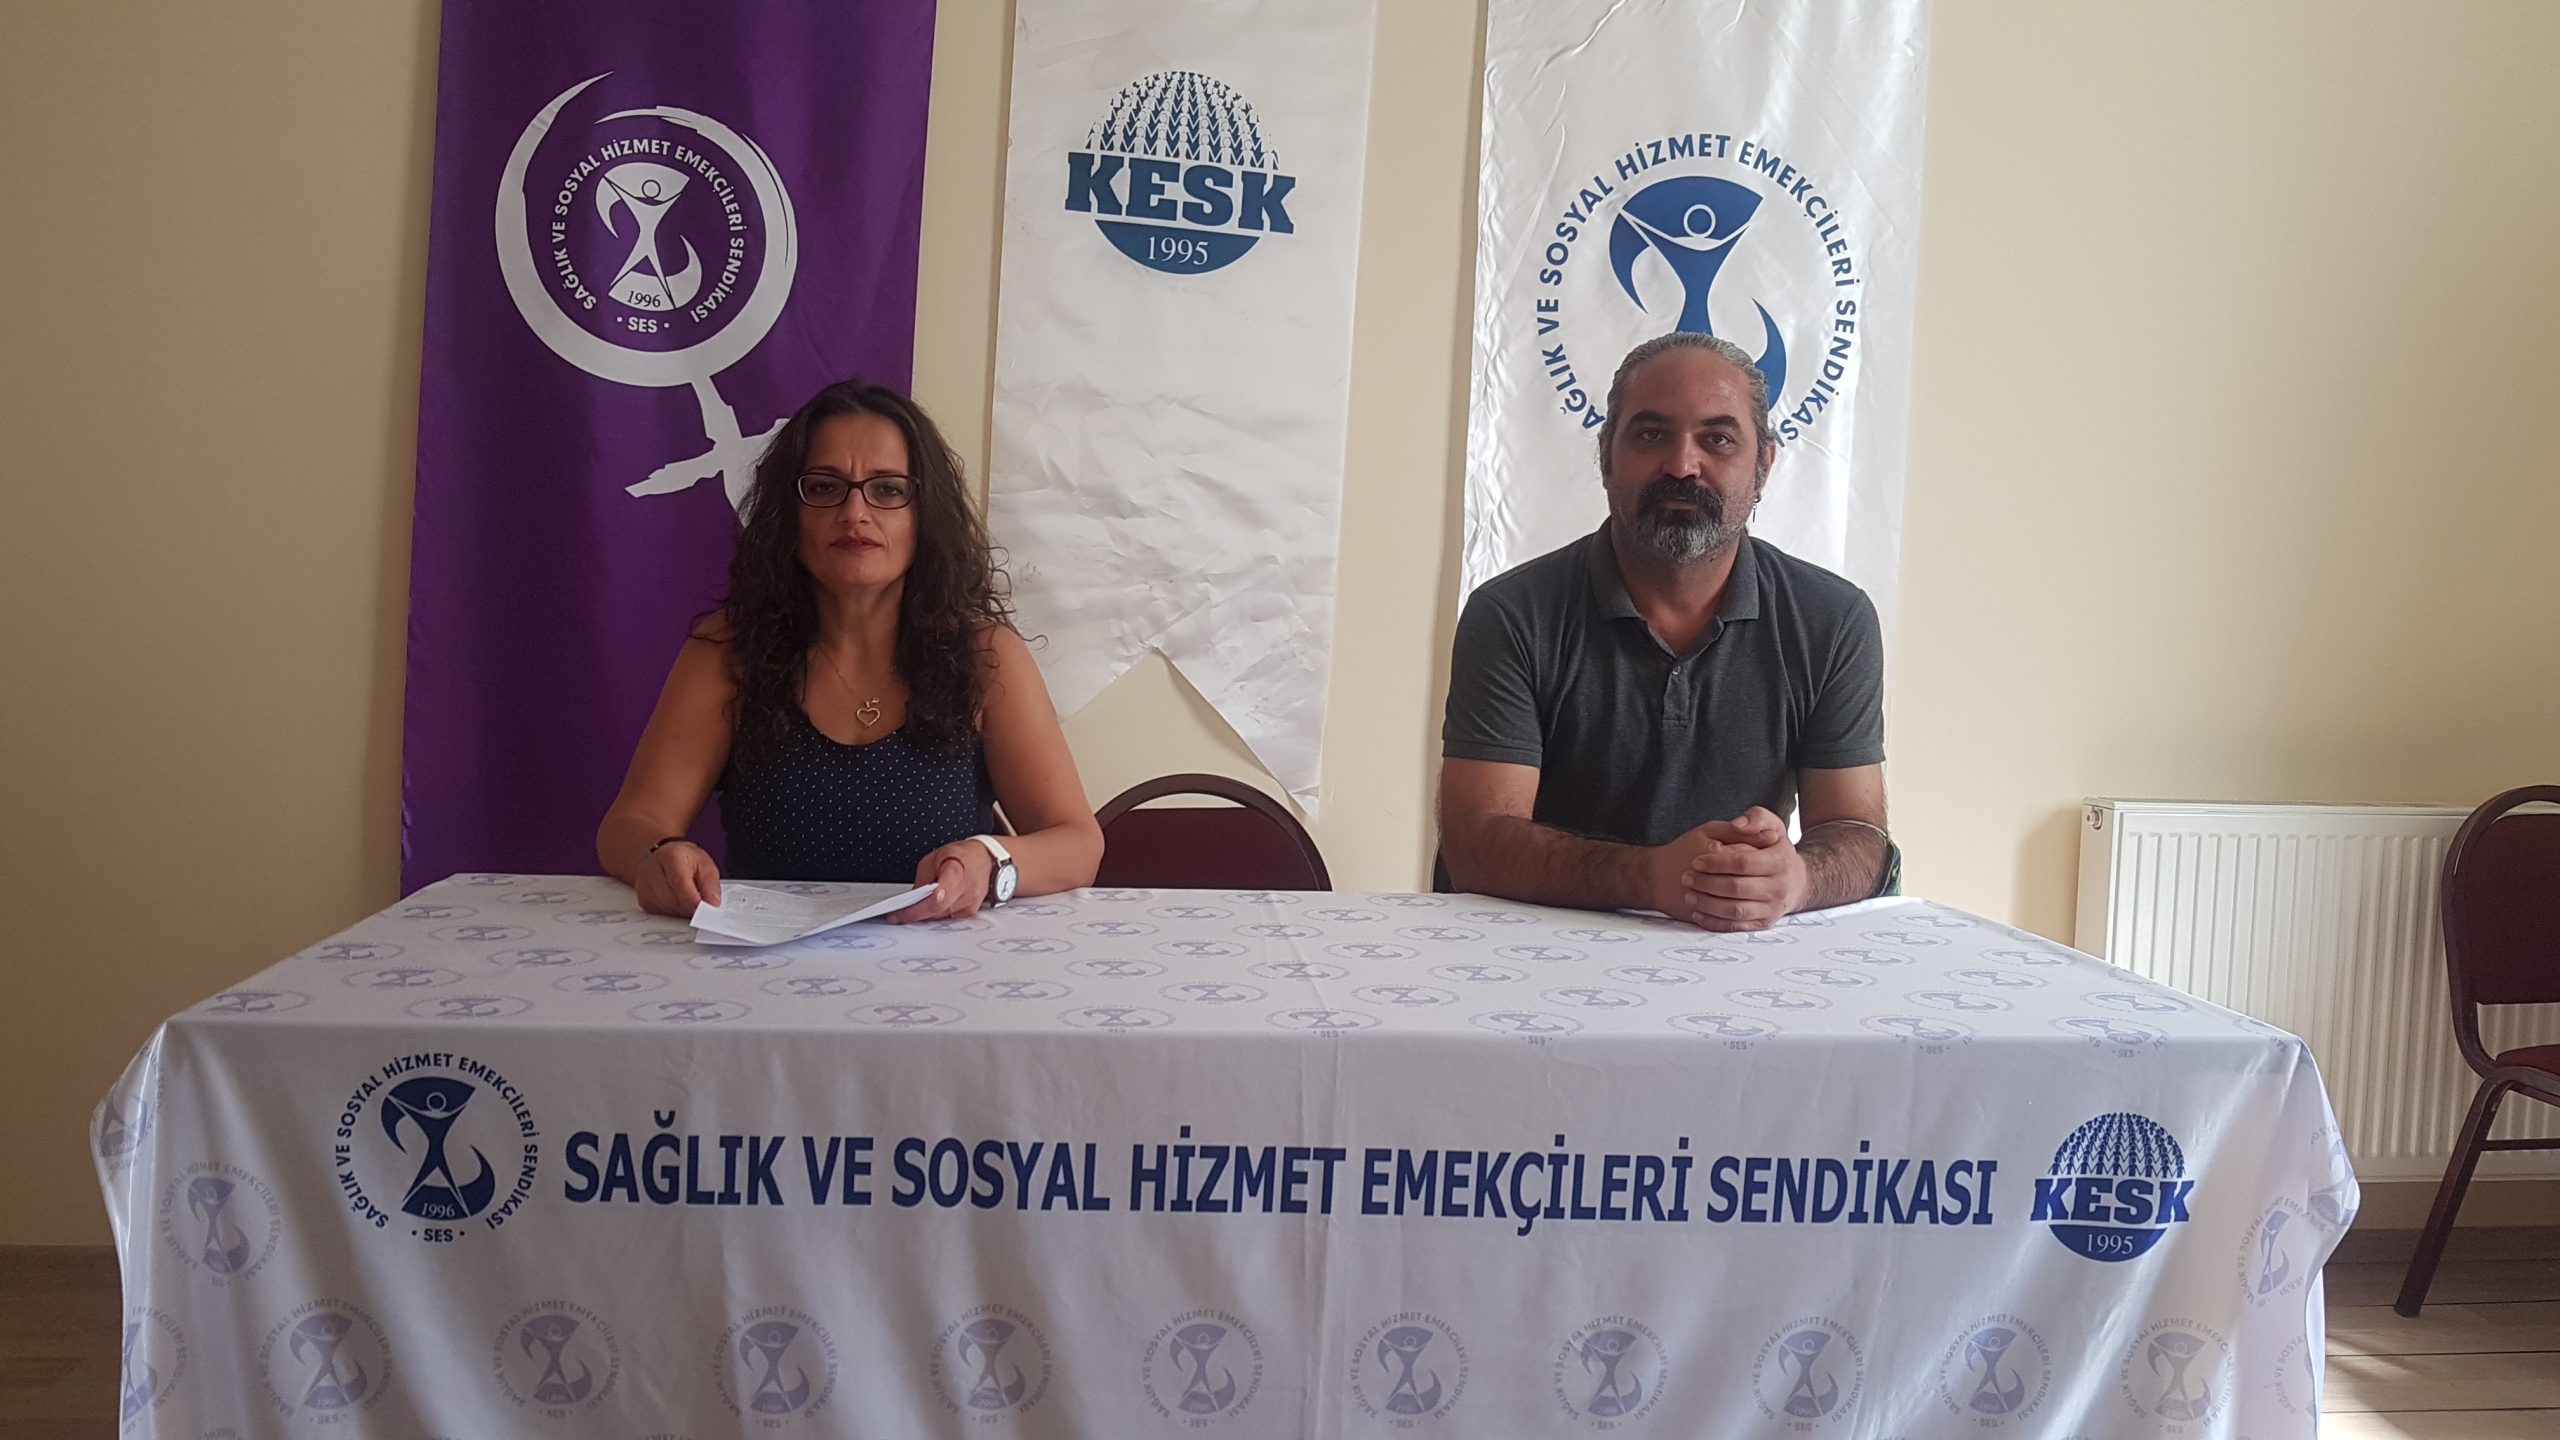 İzmir Şubemiz “Güvenceli İş, Güvenli Gelecek” İmzalarını TBMM’ye Sunulması İçin Genel Merkezimize Gönderdi